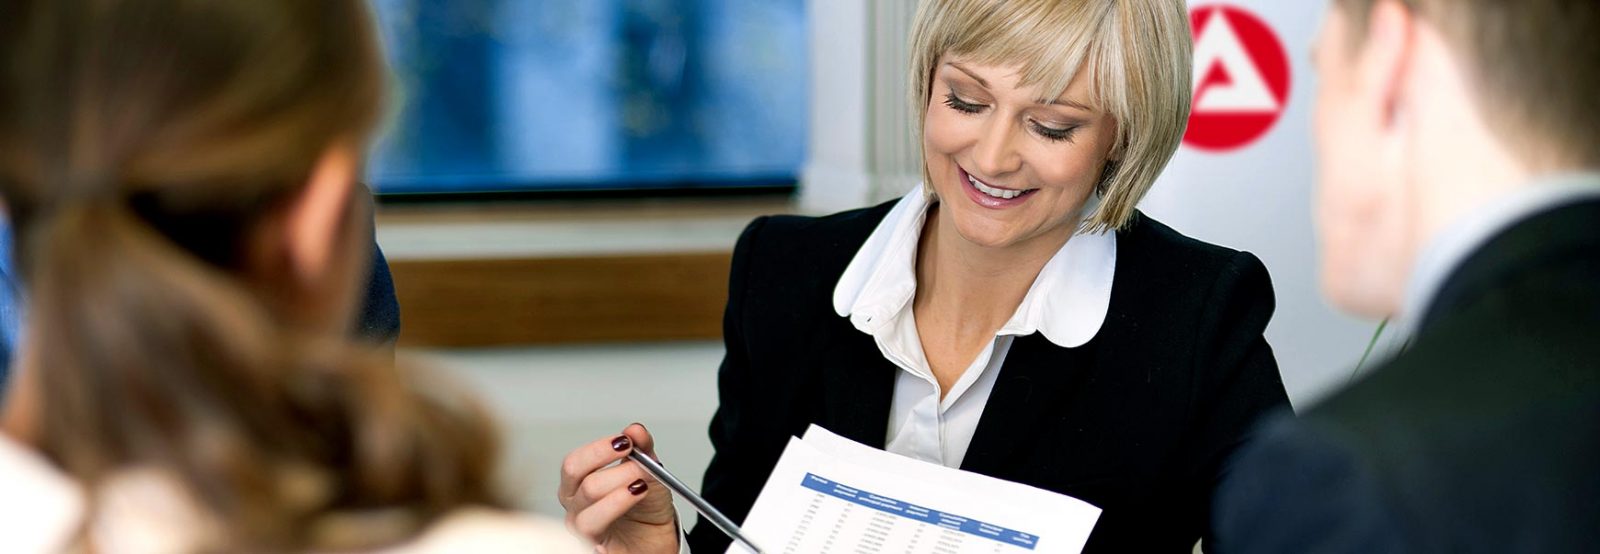 Auf dem Bild ist eine Frau im Anzug zu sehen, die mit einem Stift auf eine Tabelle auf einem Blatt Papier zeigt.